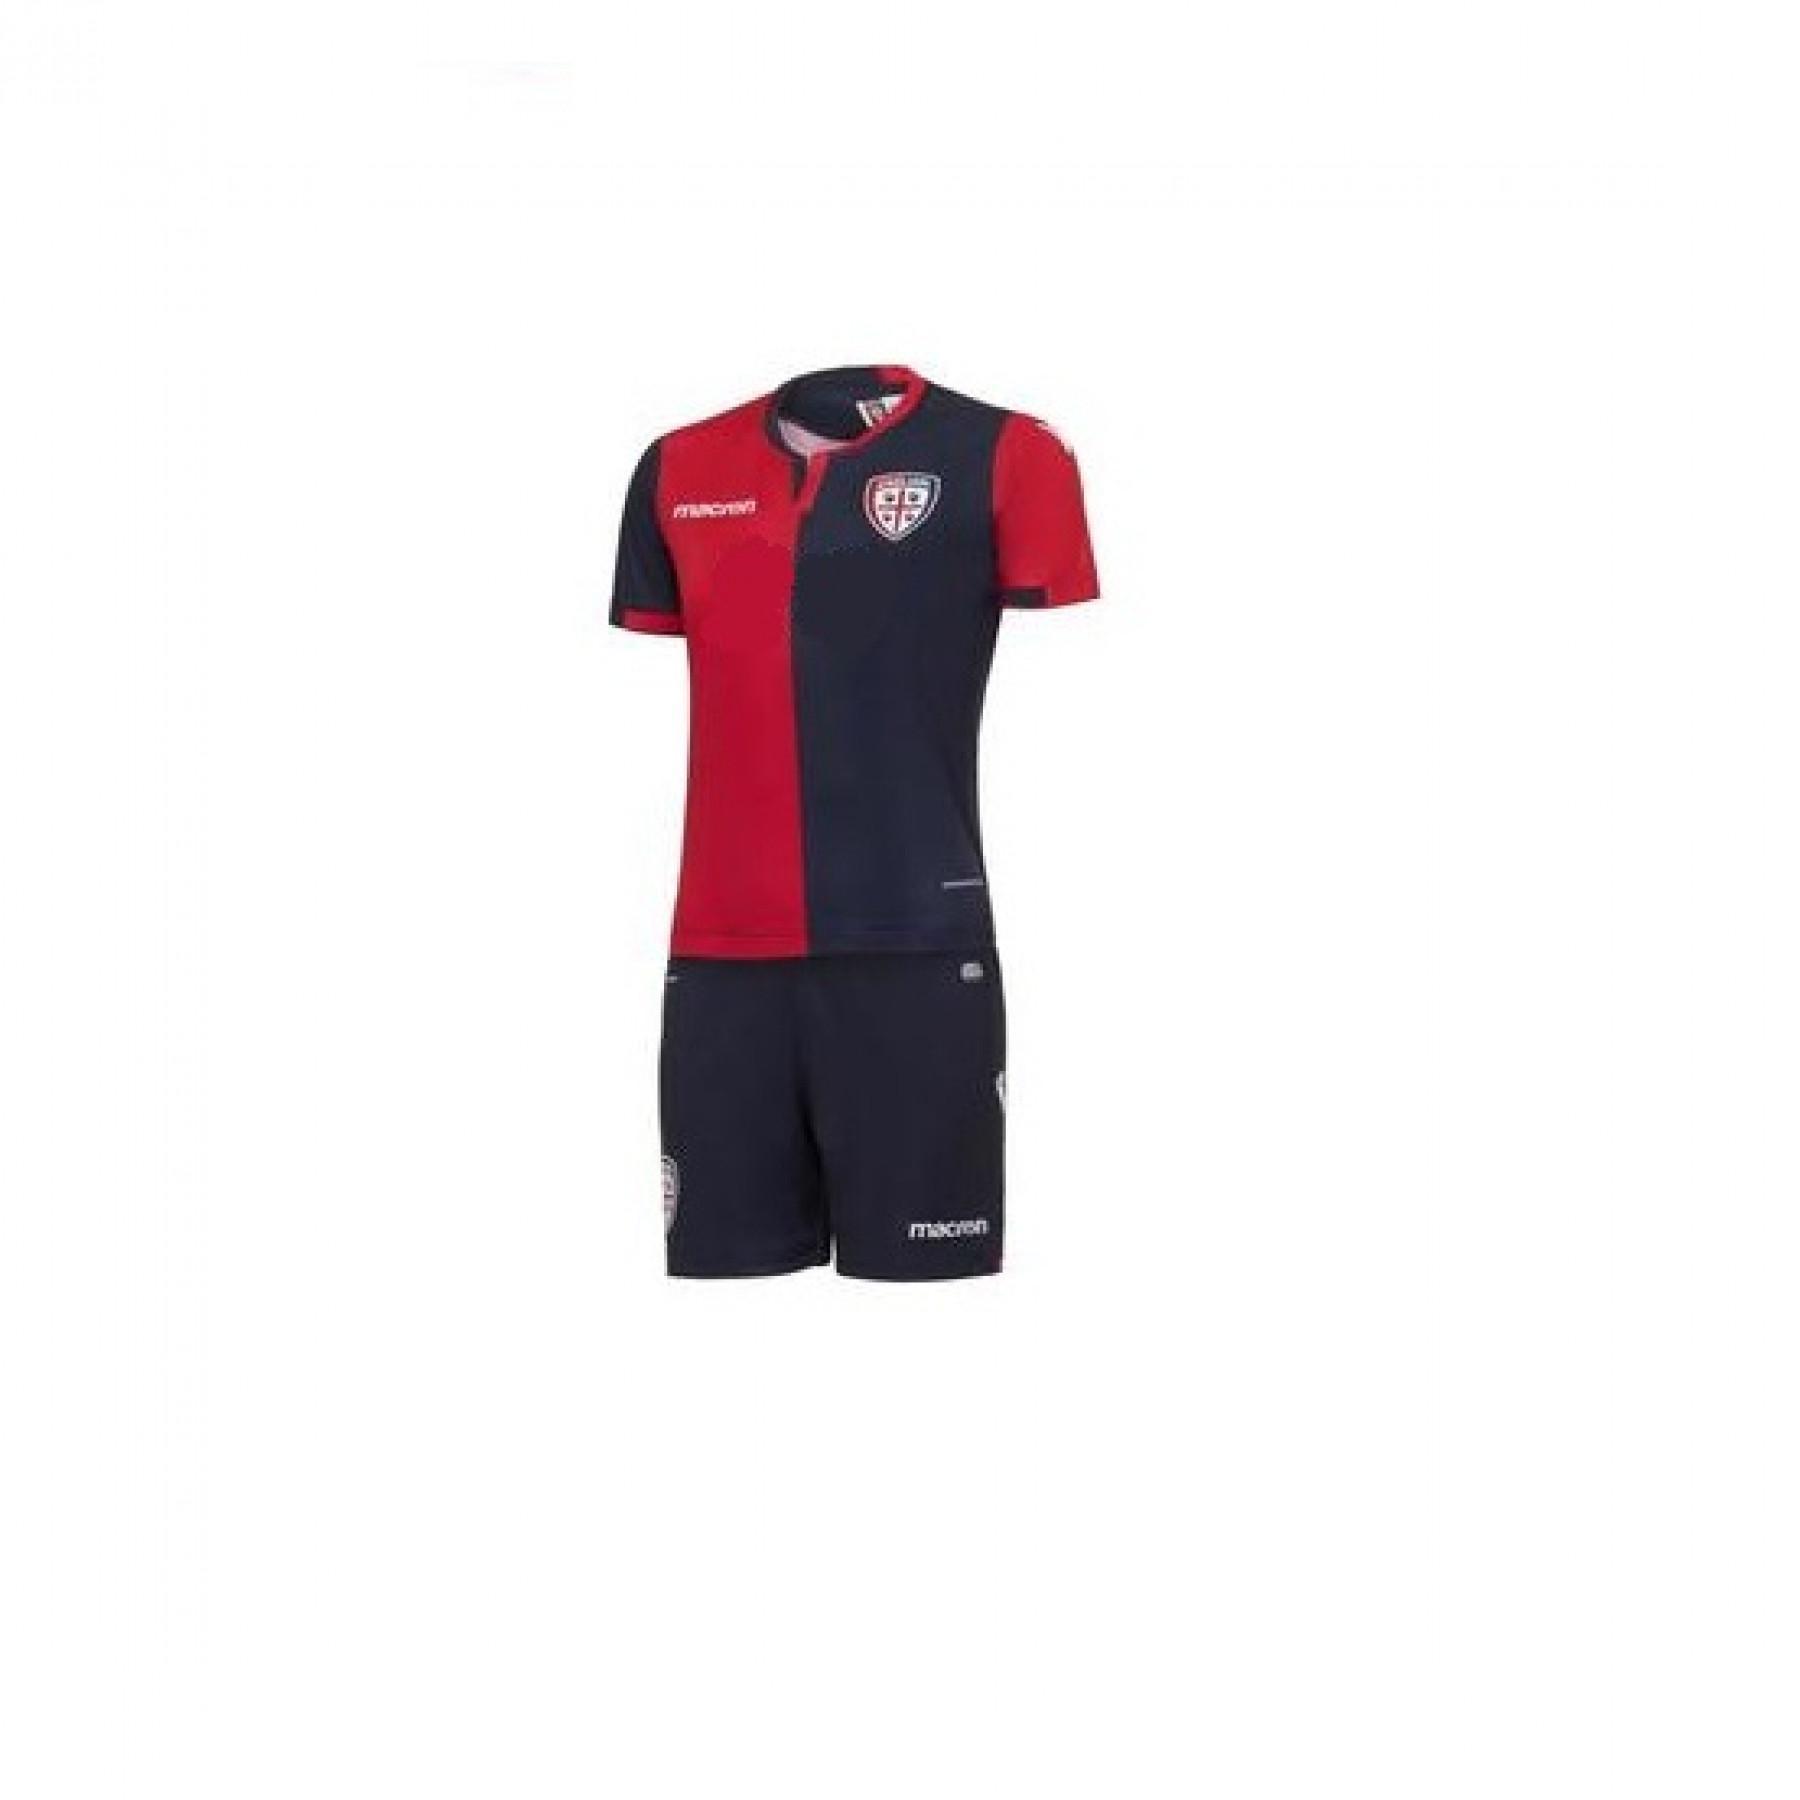 Hem mini-kit Cagliari 2018/19